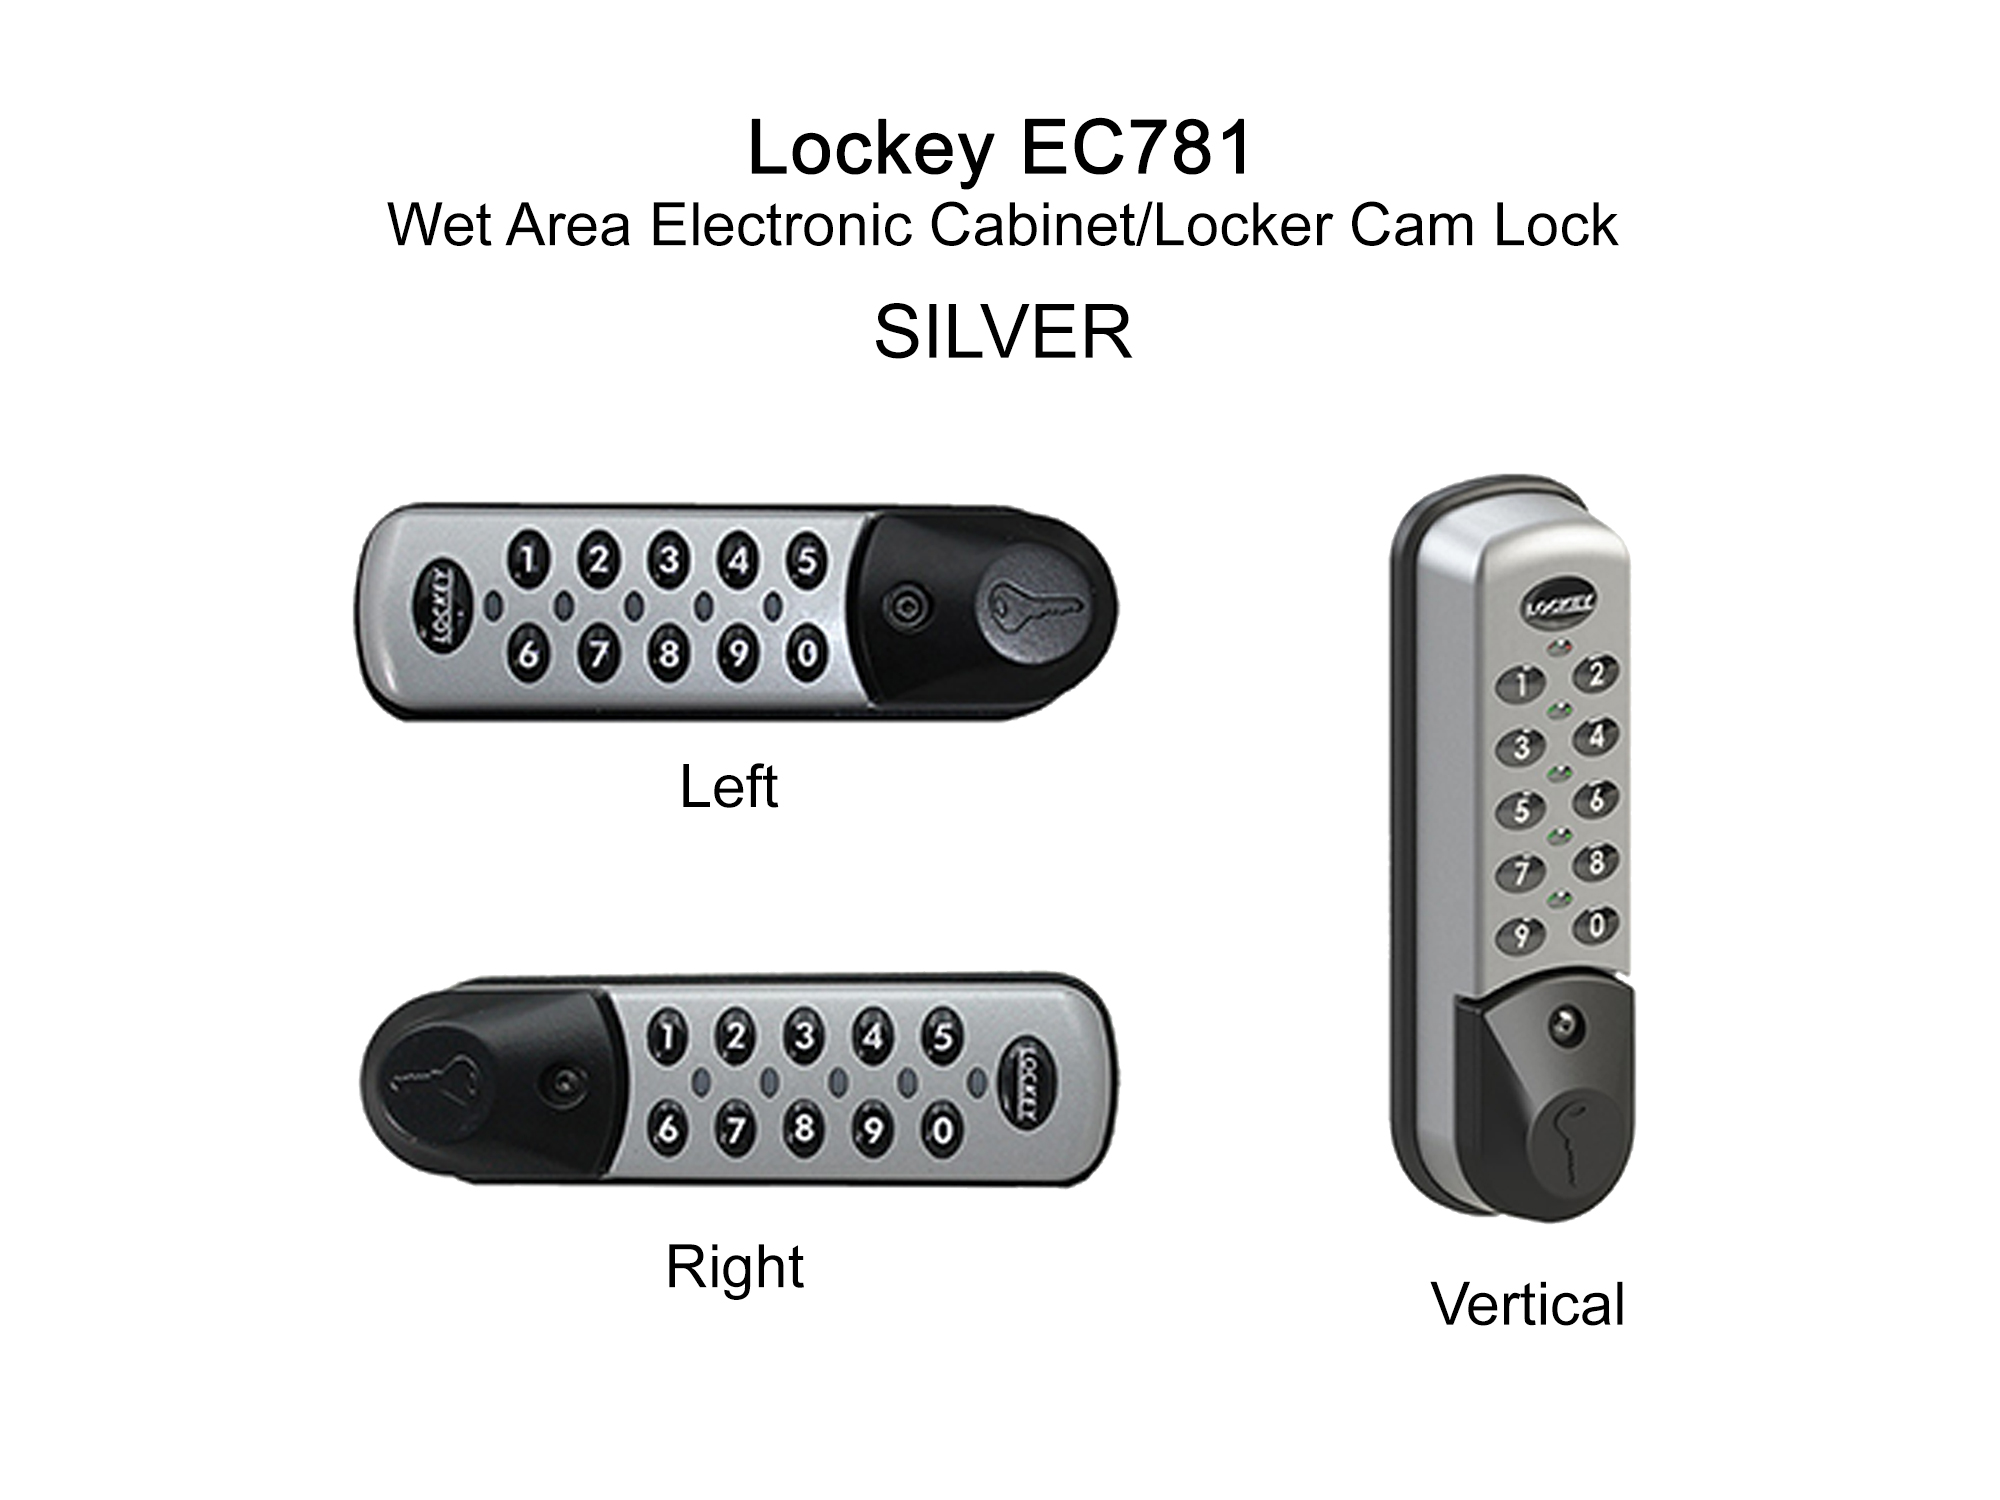 Lockey EC781 Wet Area Electronic Cabinet/Locker Cam Lock